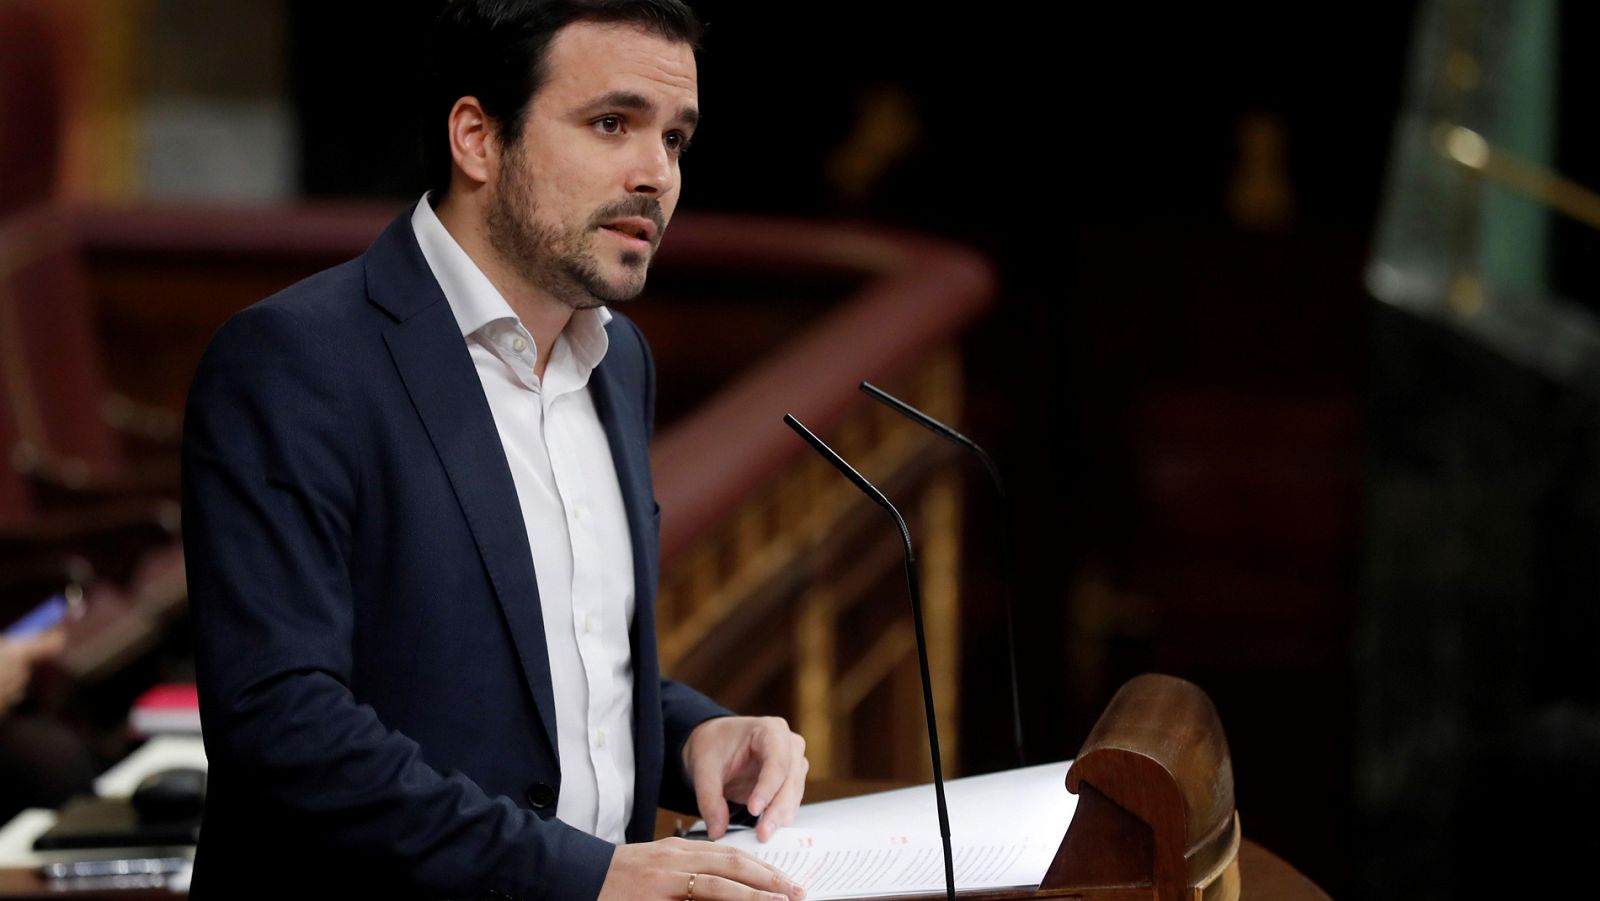 El portavoz económico de Unidos Podemos, Alberto Garzón, ha pedido a los independentistas catalanes que reconsideren su posición y permitan la tramitación de unas cuentas que son positivas "para las familias trabajadoras de este país".